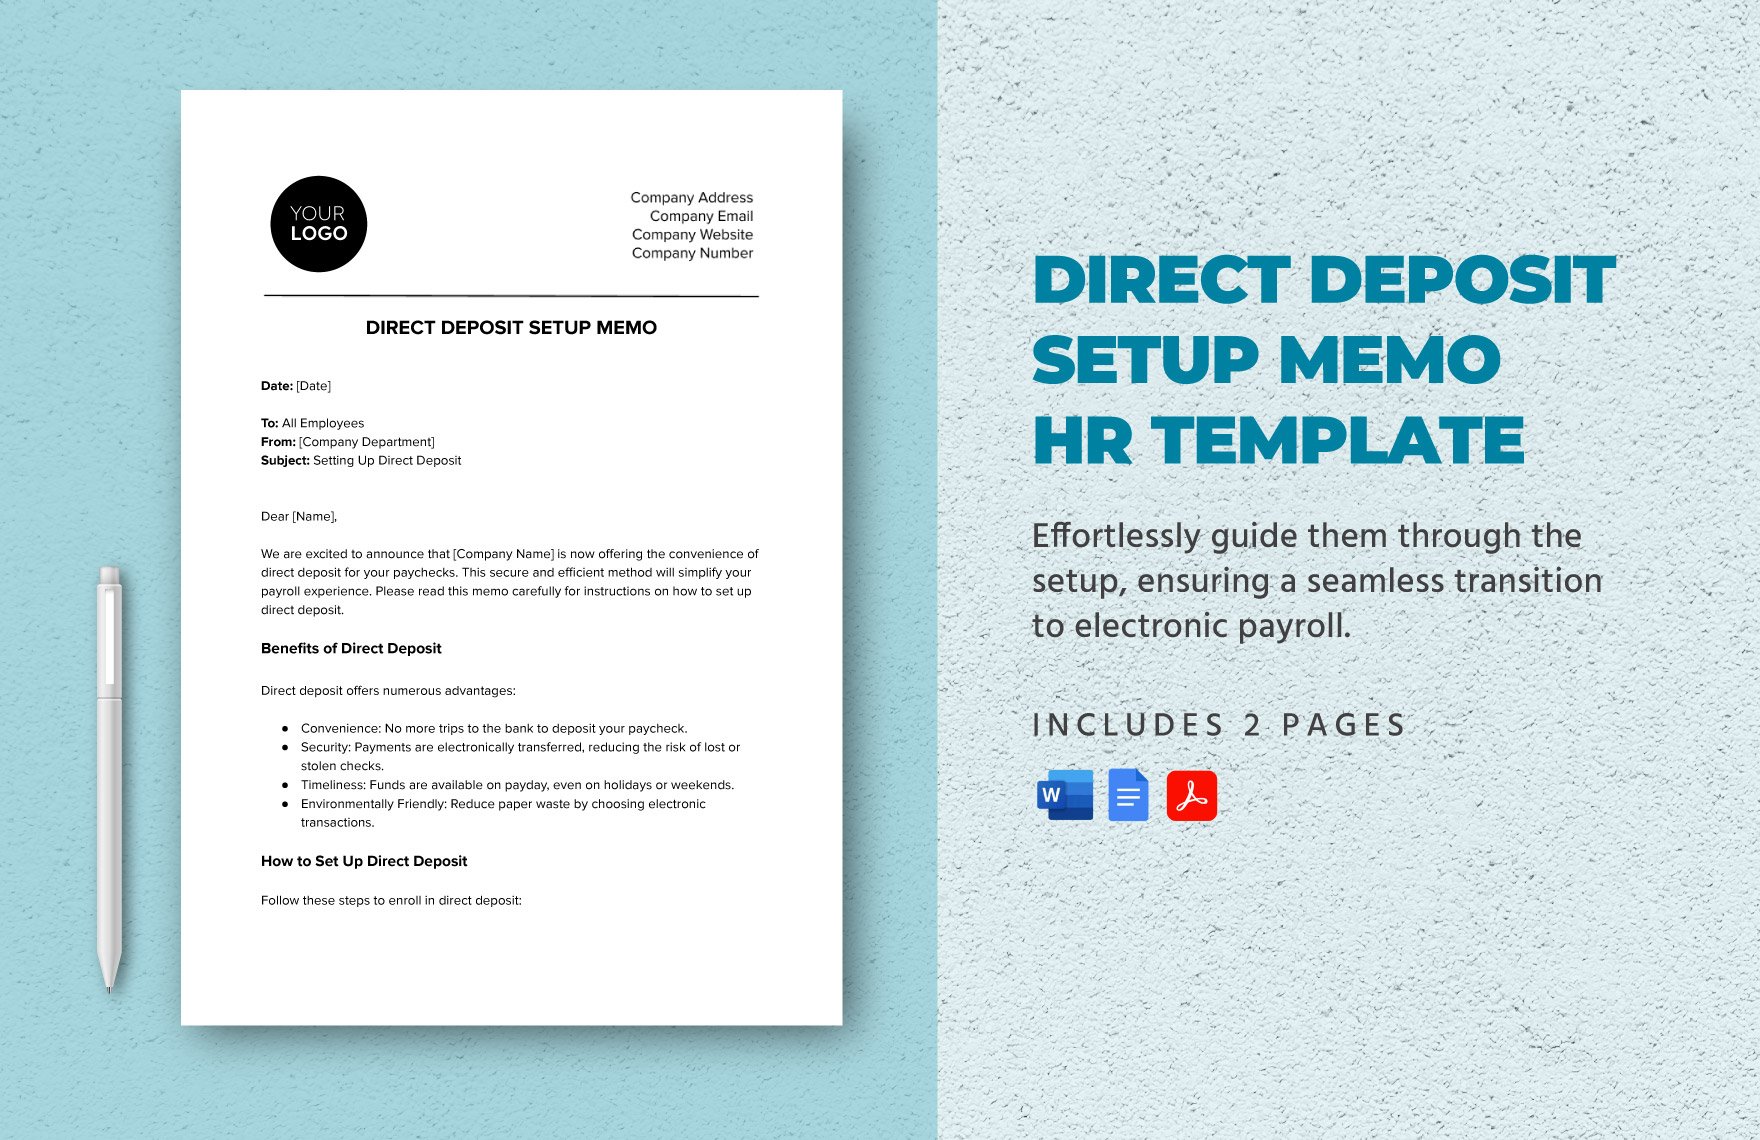 Direct Deposit Setup Memo HR Template